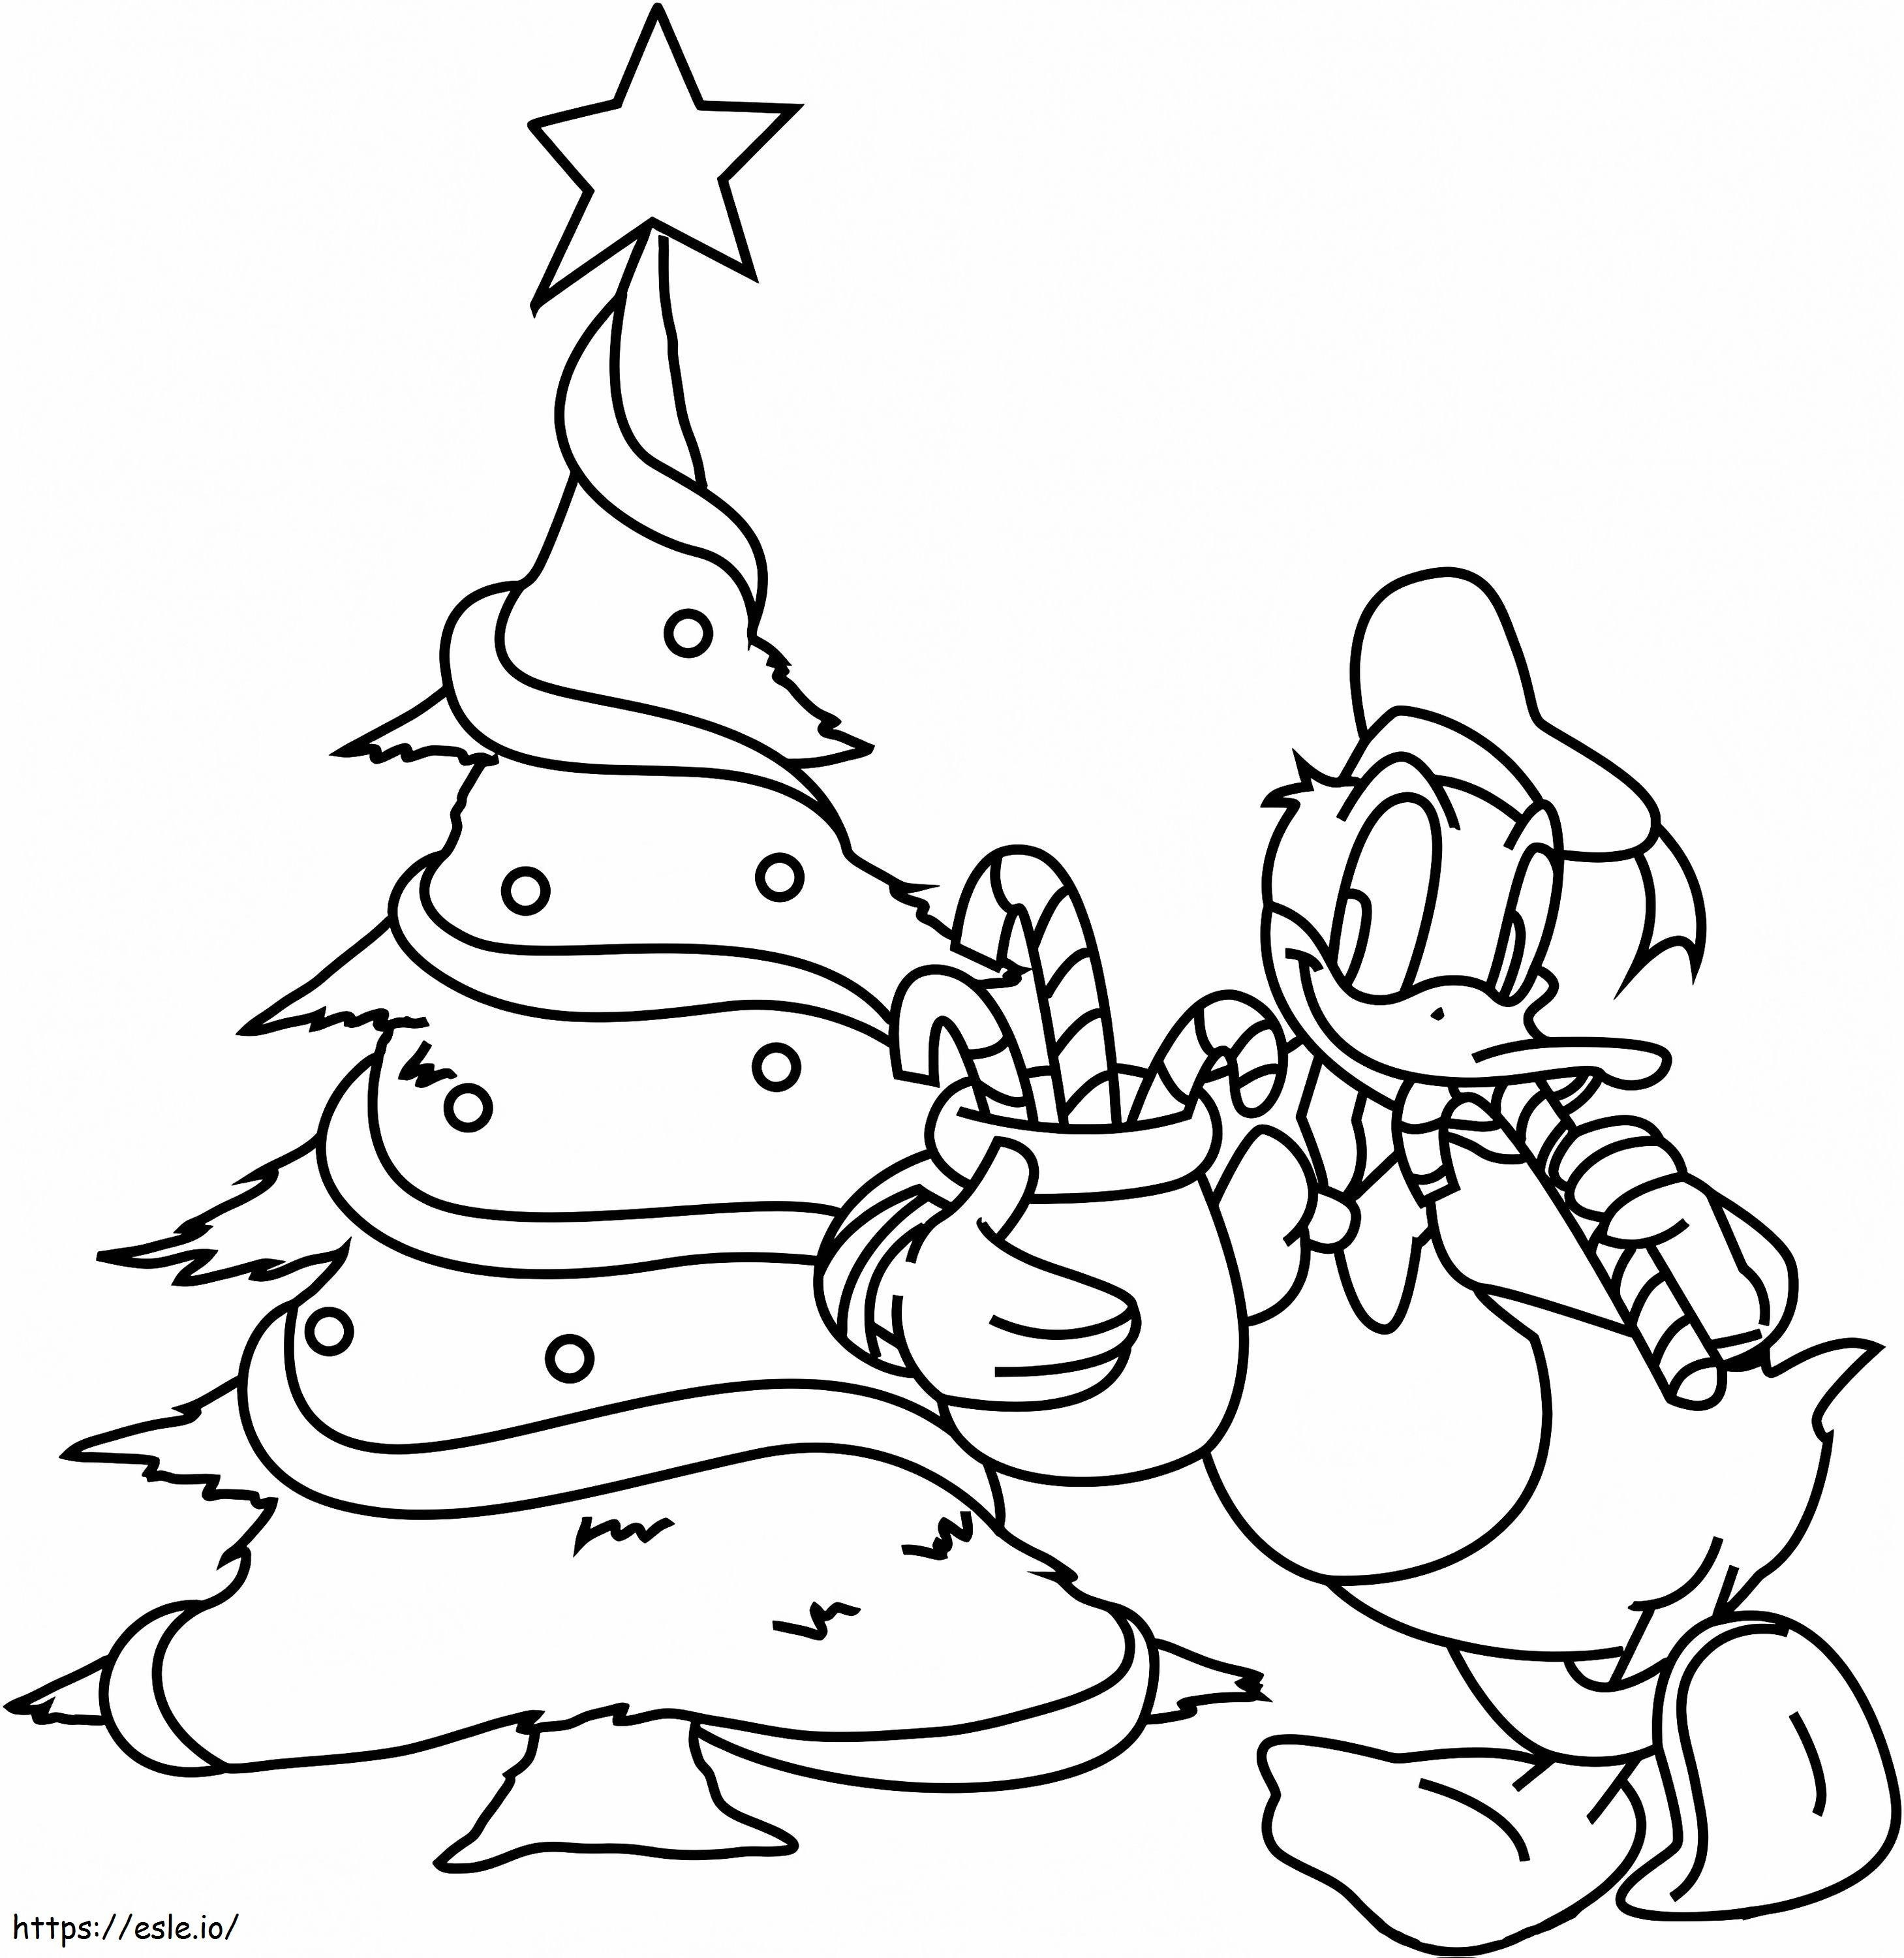  ドナルドダックとクリスマスツリー A4 ぬりえ - 塗り絵